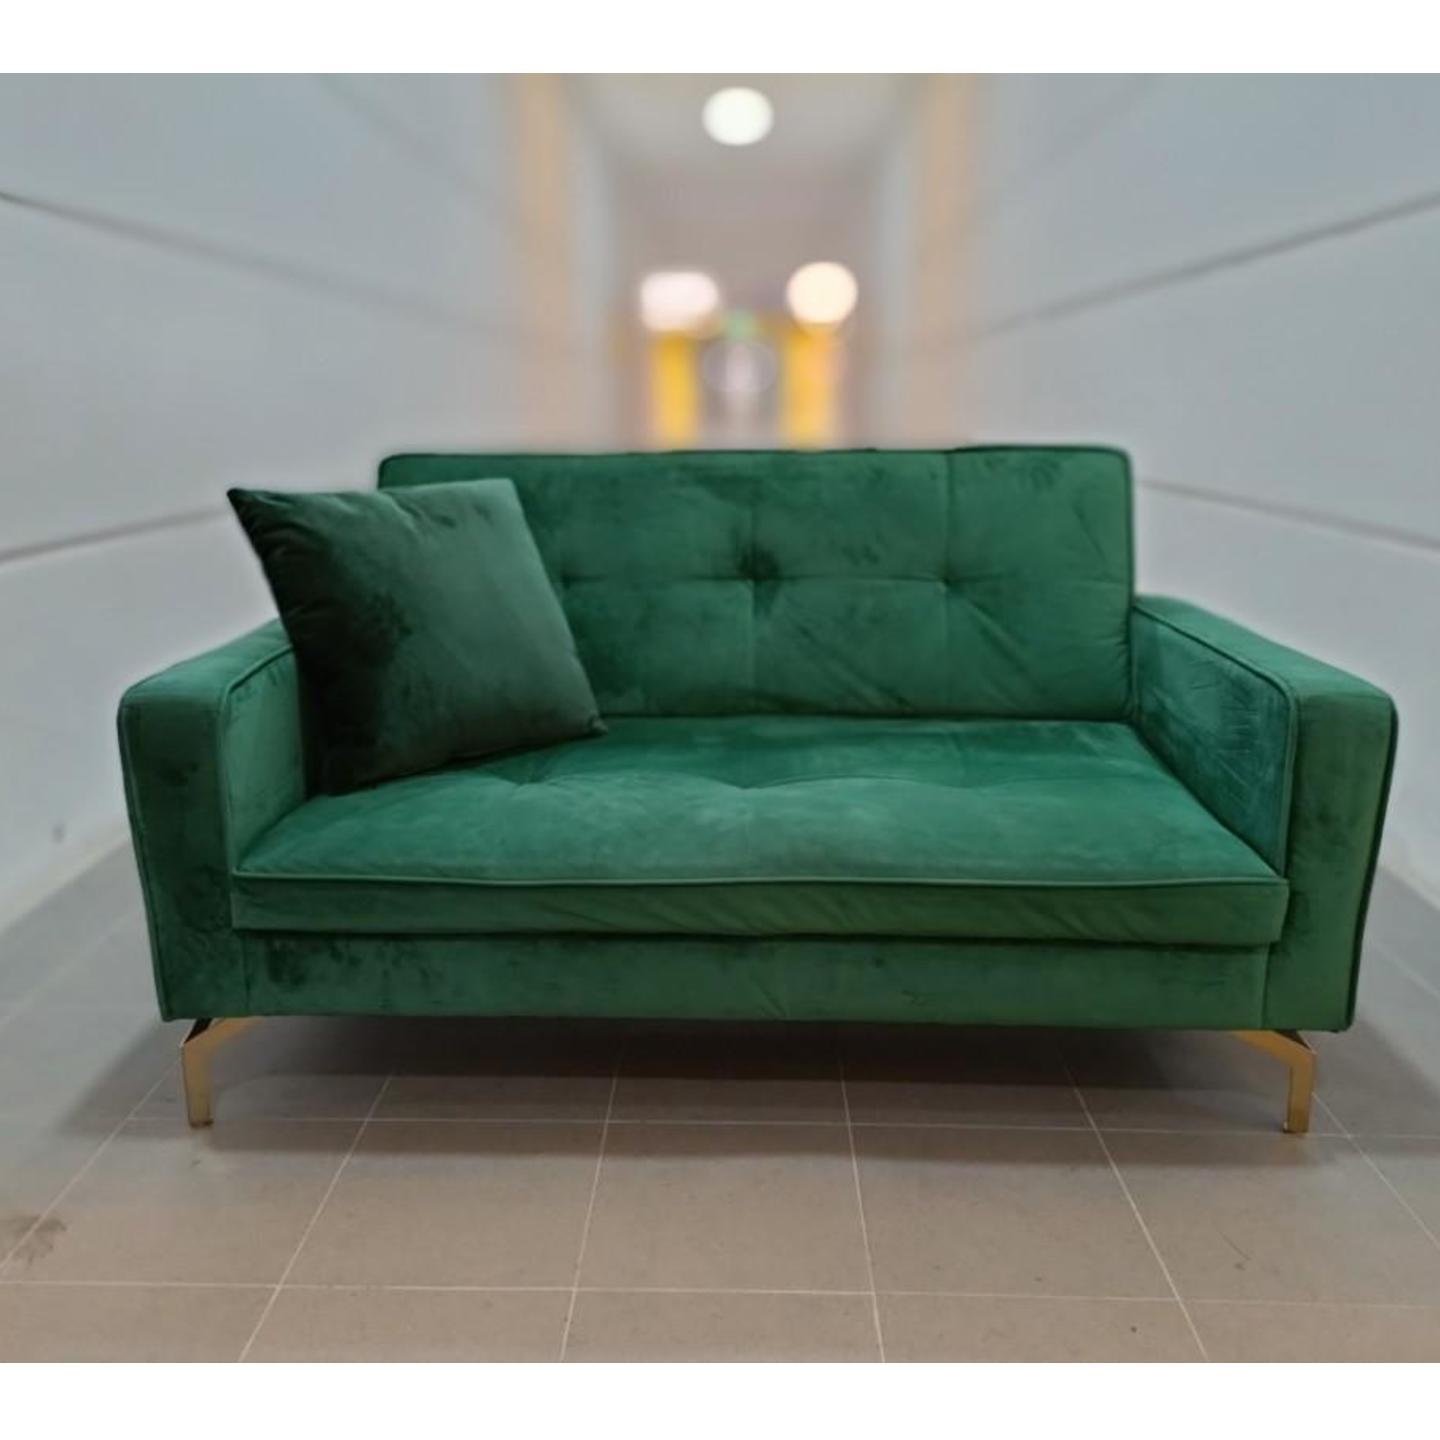 NOBA 2 Seater Sofa in EMERALD GREEN VELVET